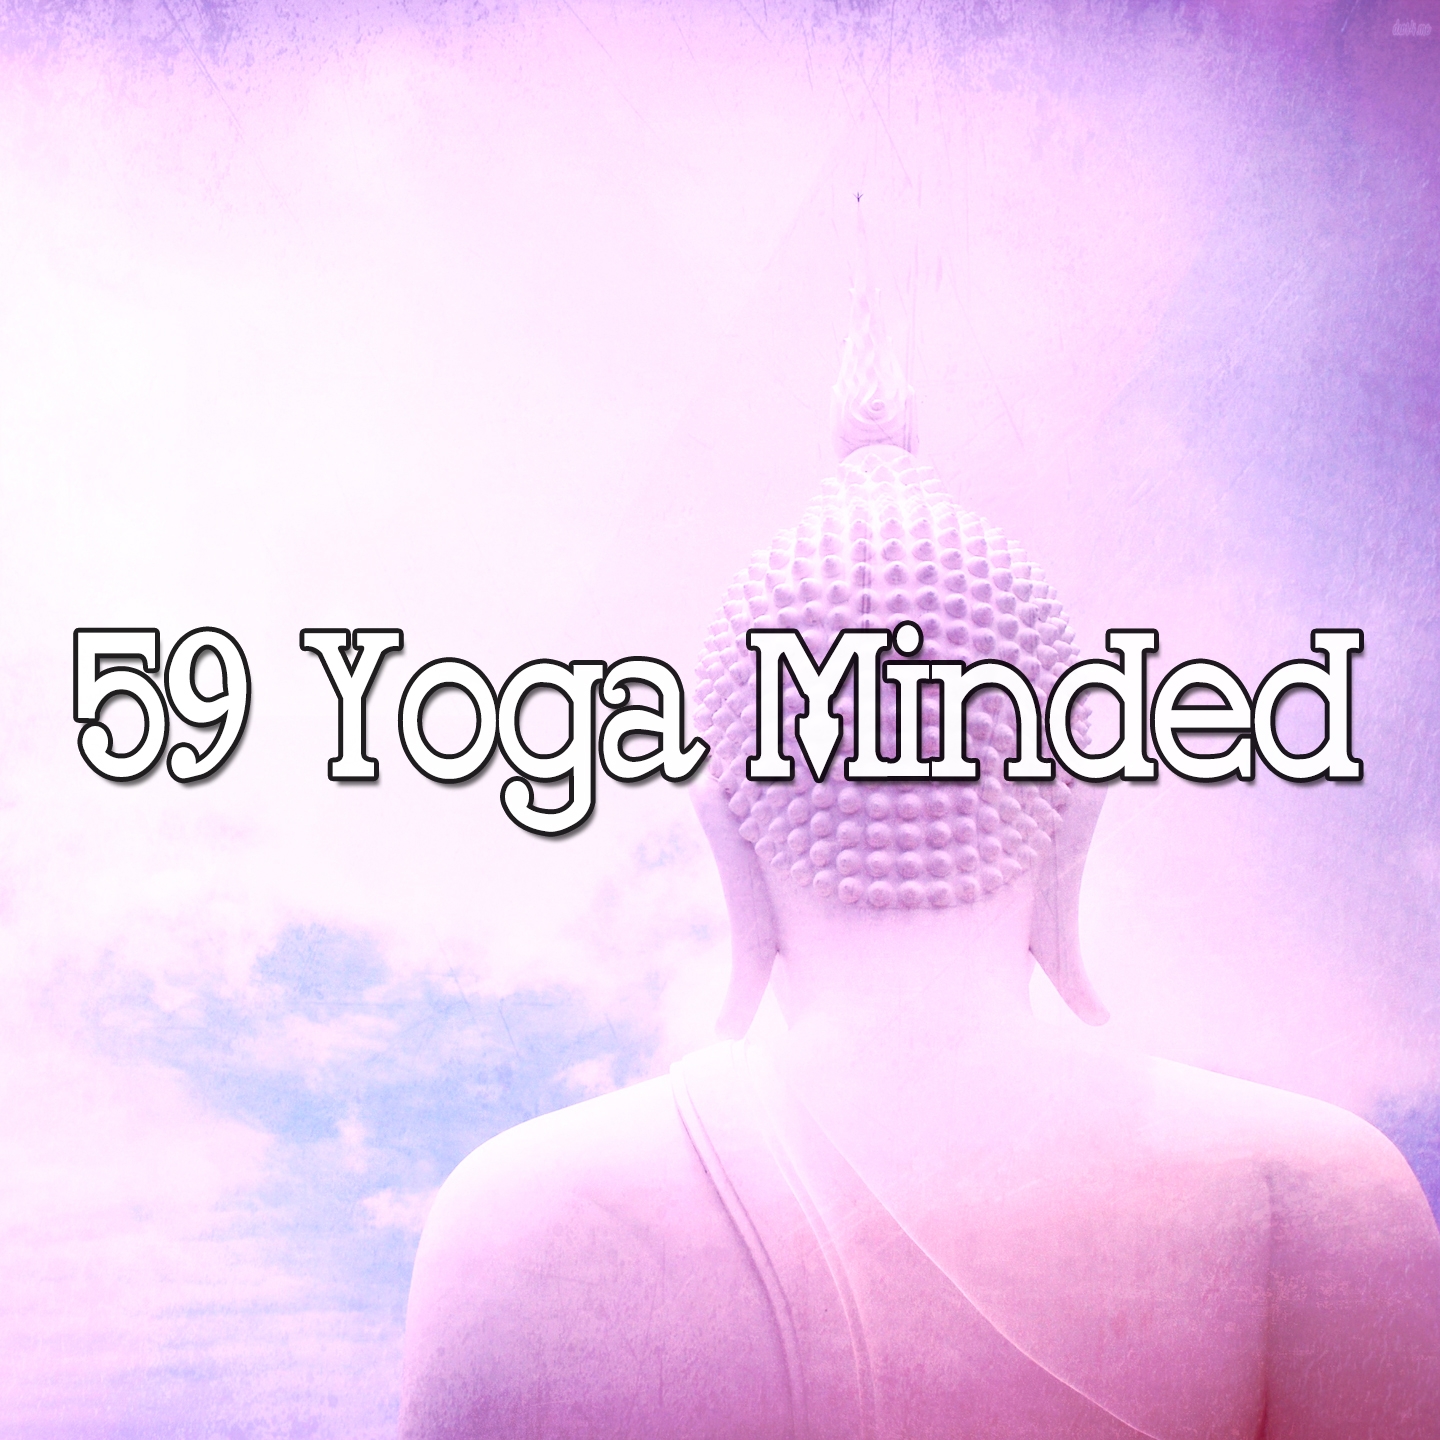 59 Yoga Minded